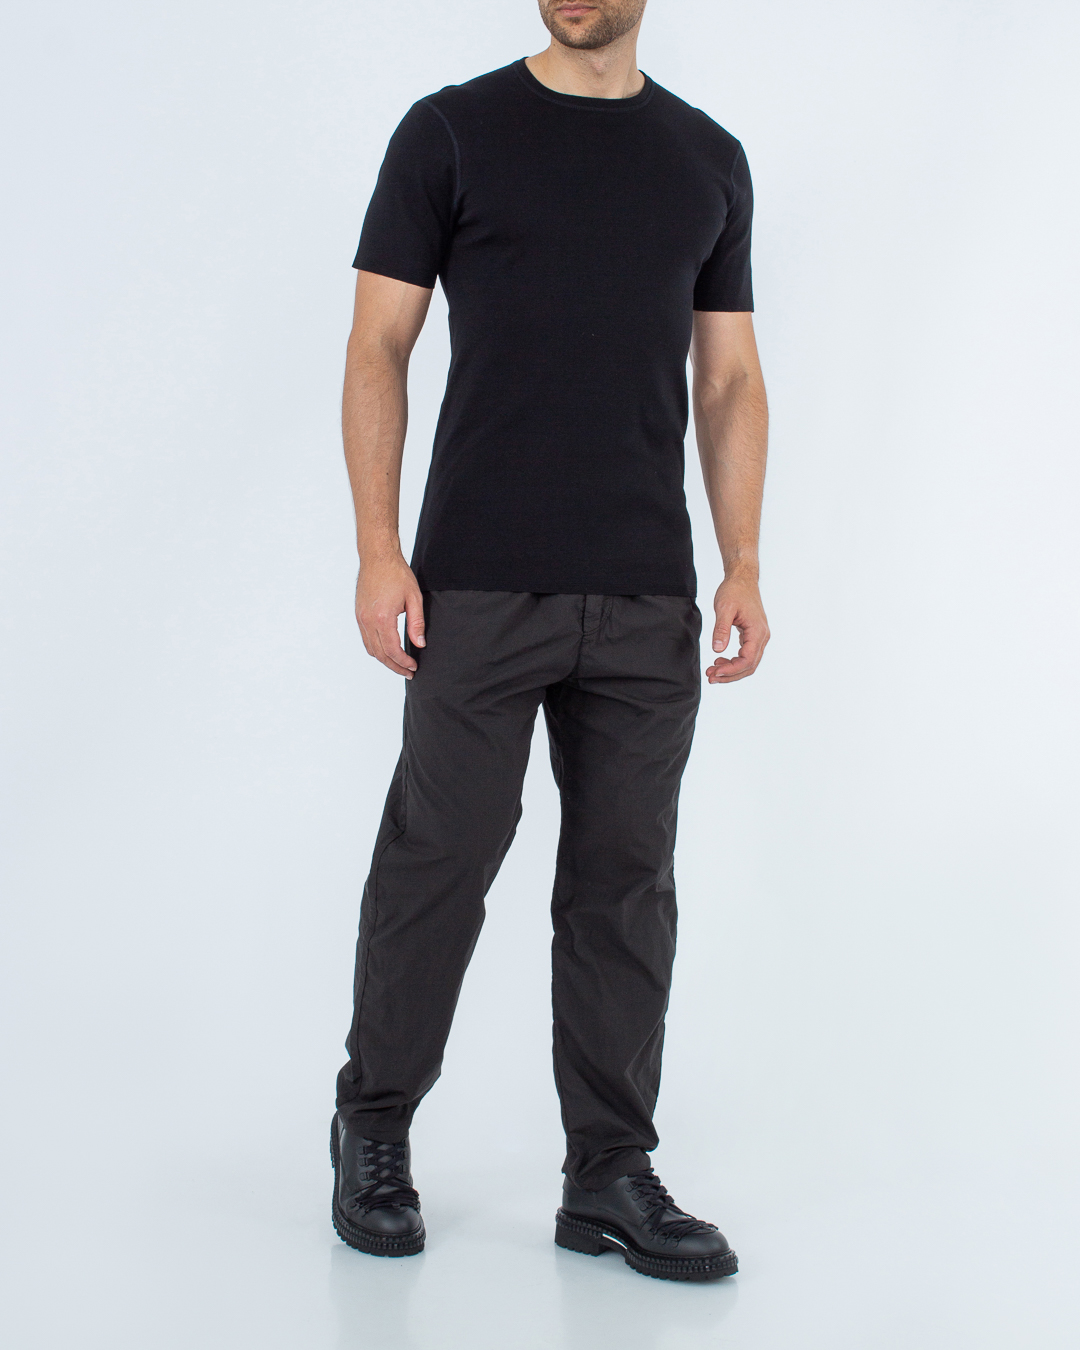 брюки Hannes Roether 110974 черный xl, размер xl - фото 2